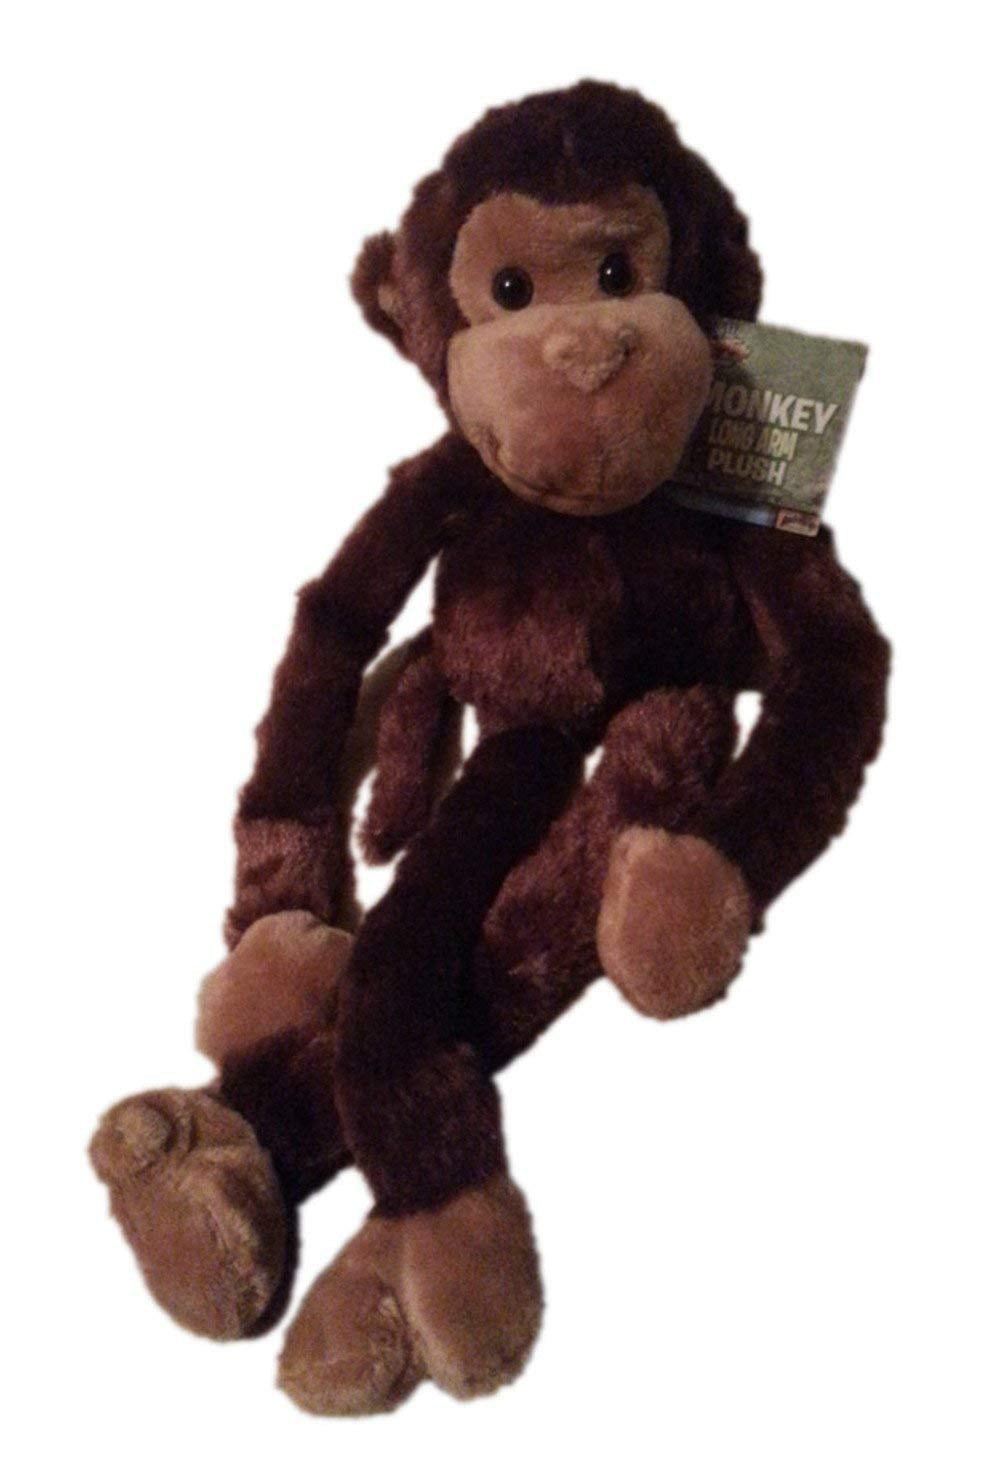 stuffed animal monkey with velcro hands